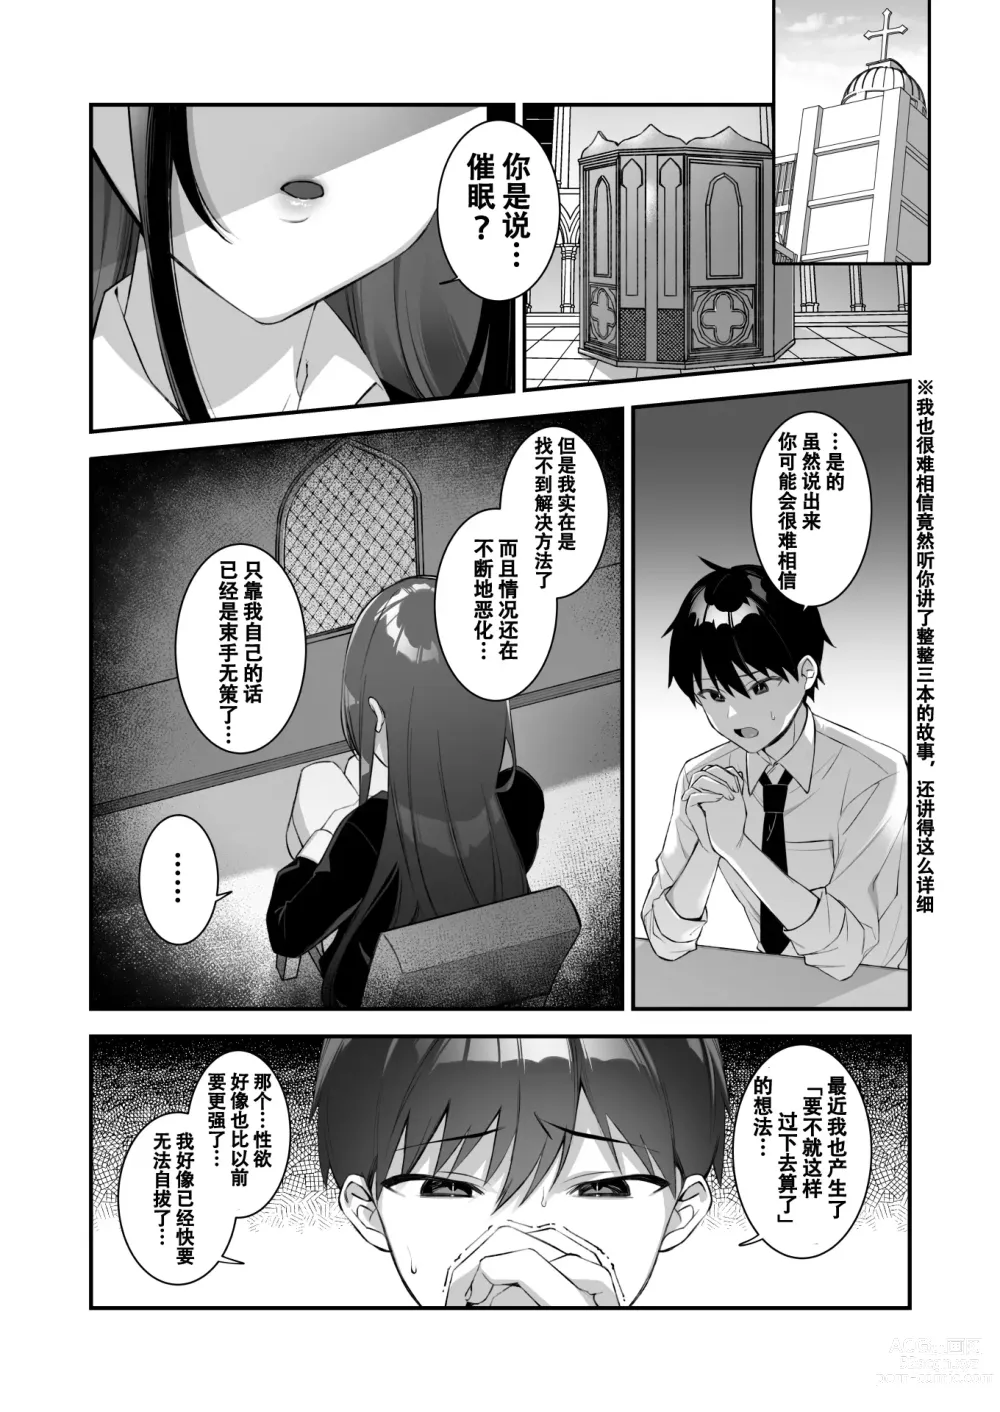 Page 61 of manga Okasare Saimin 3 Danshi Hitori Shika Inai Gakuen de Seikaku Saiaku no Ijimekko ni Hankire Makuru